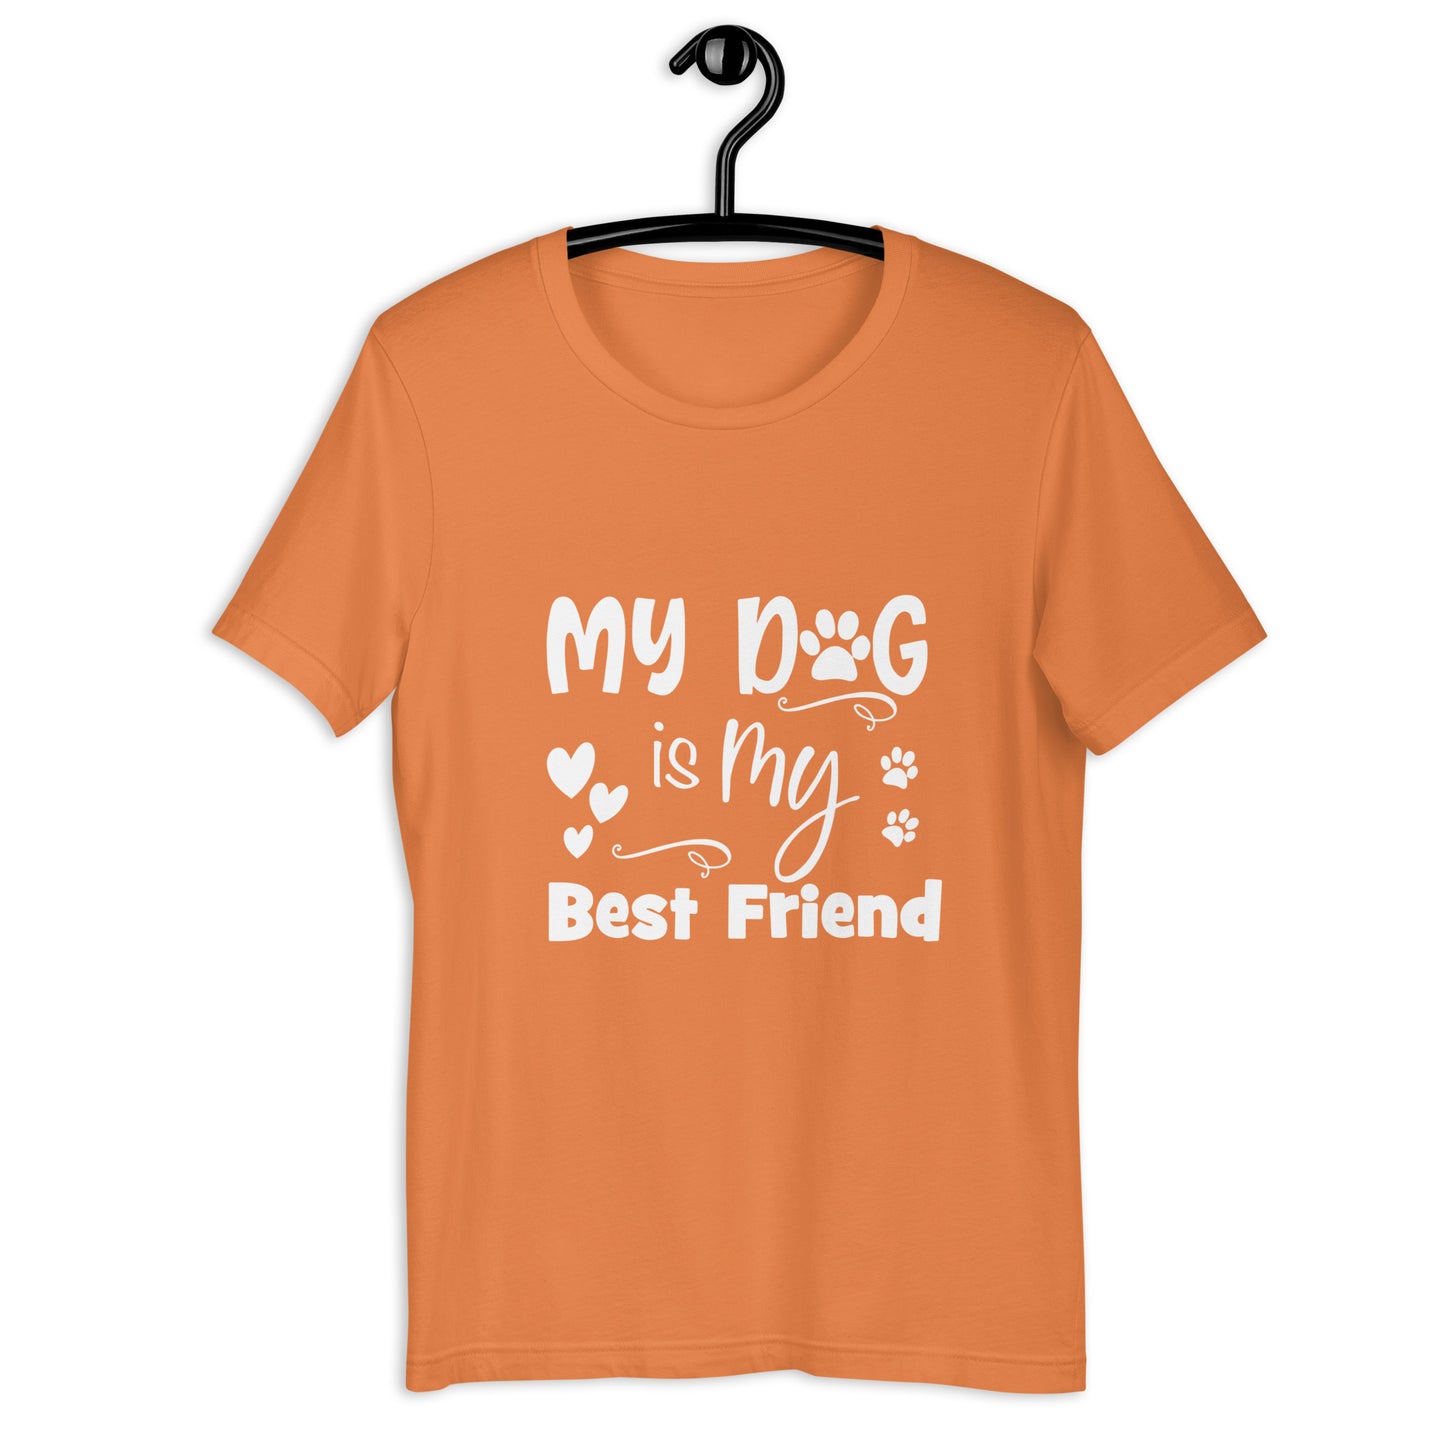 MY DOG IS MY BEST FRIEND - Unisex t-shirt